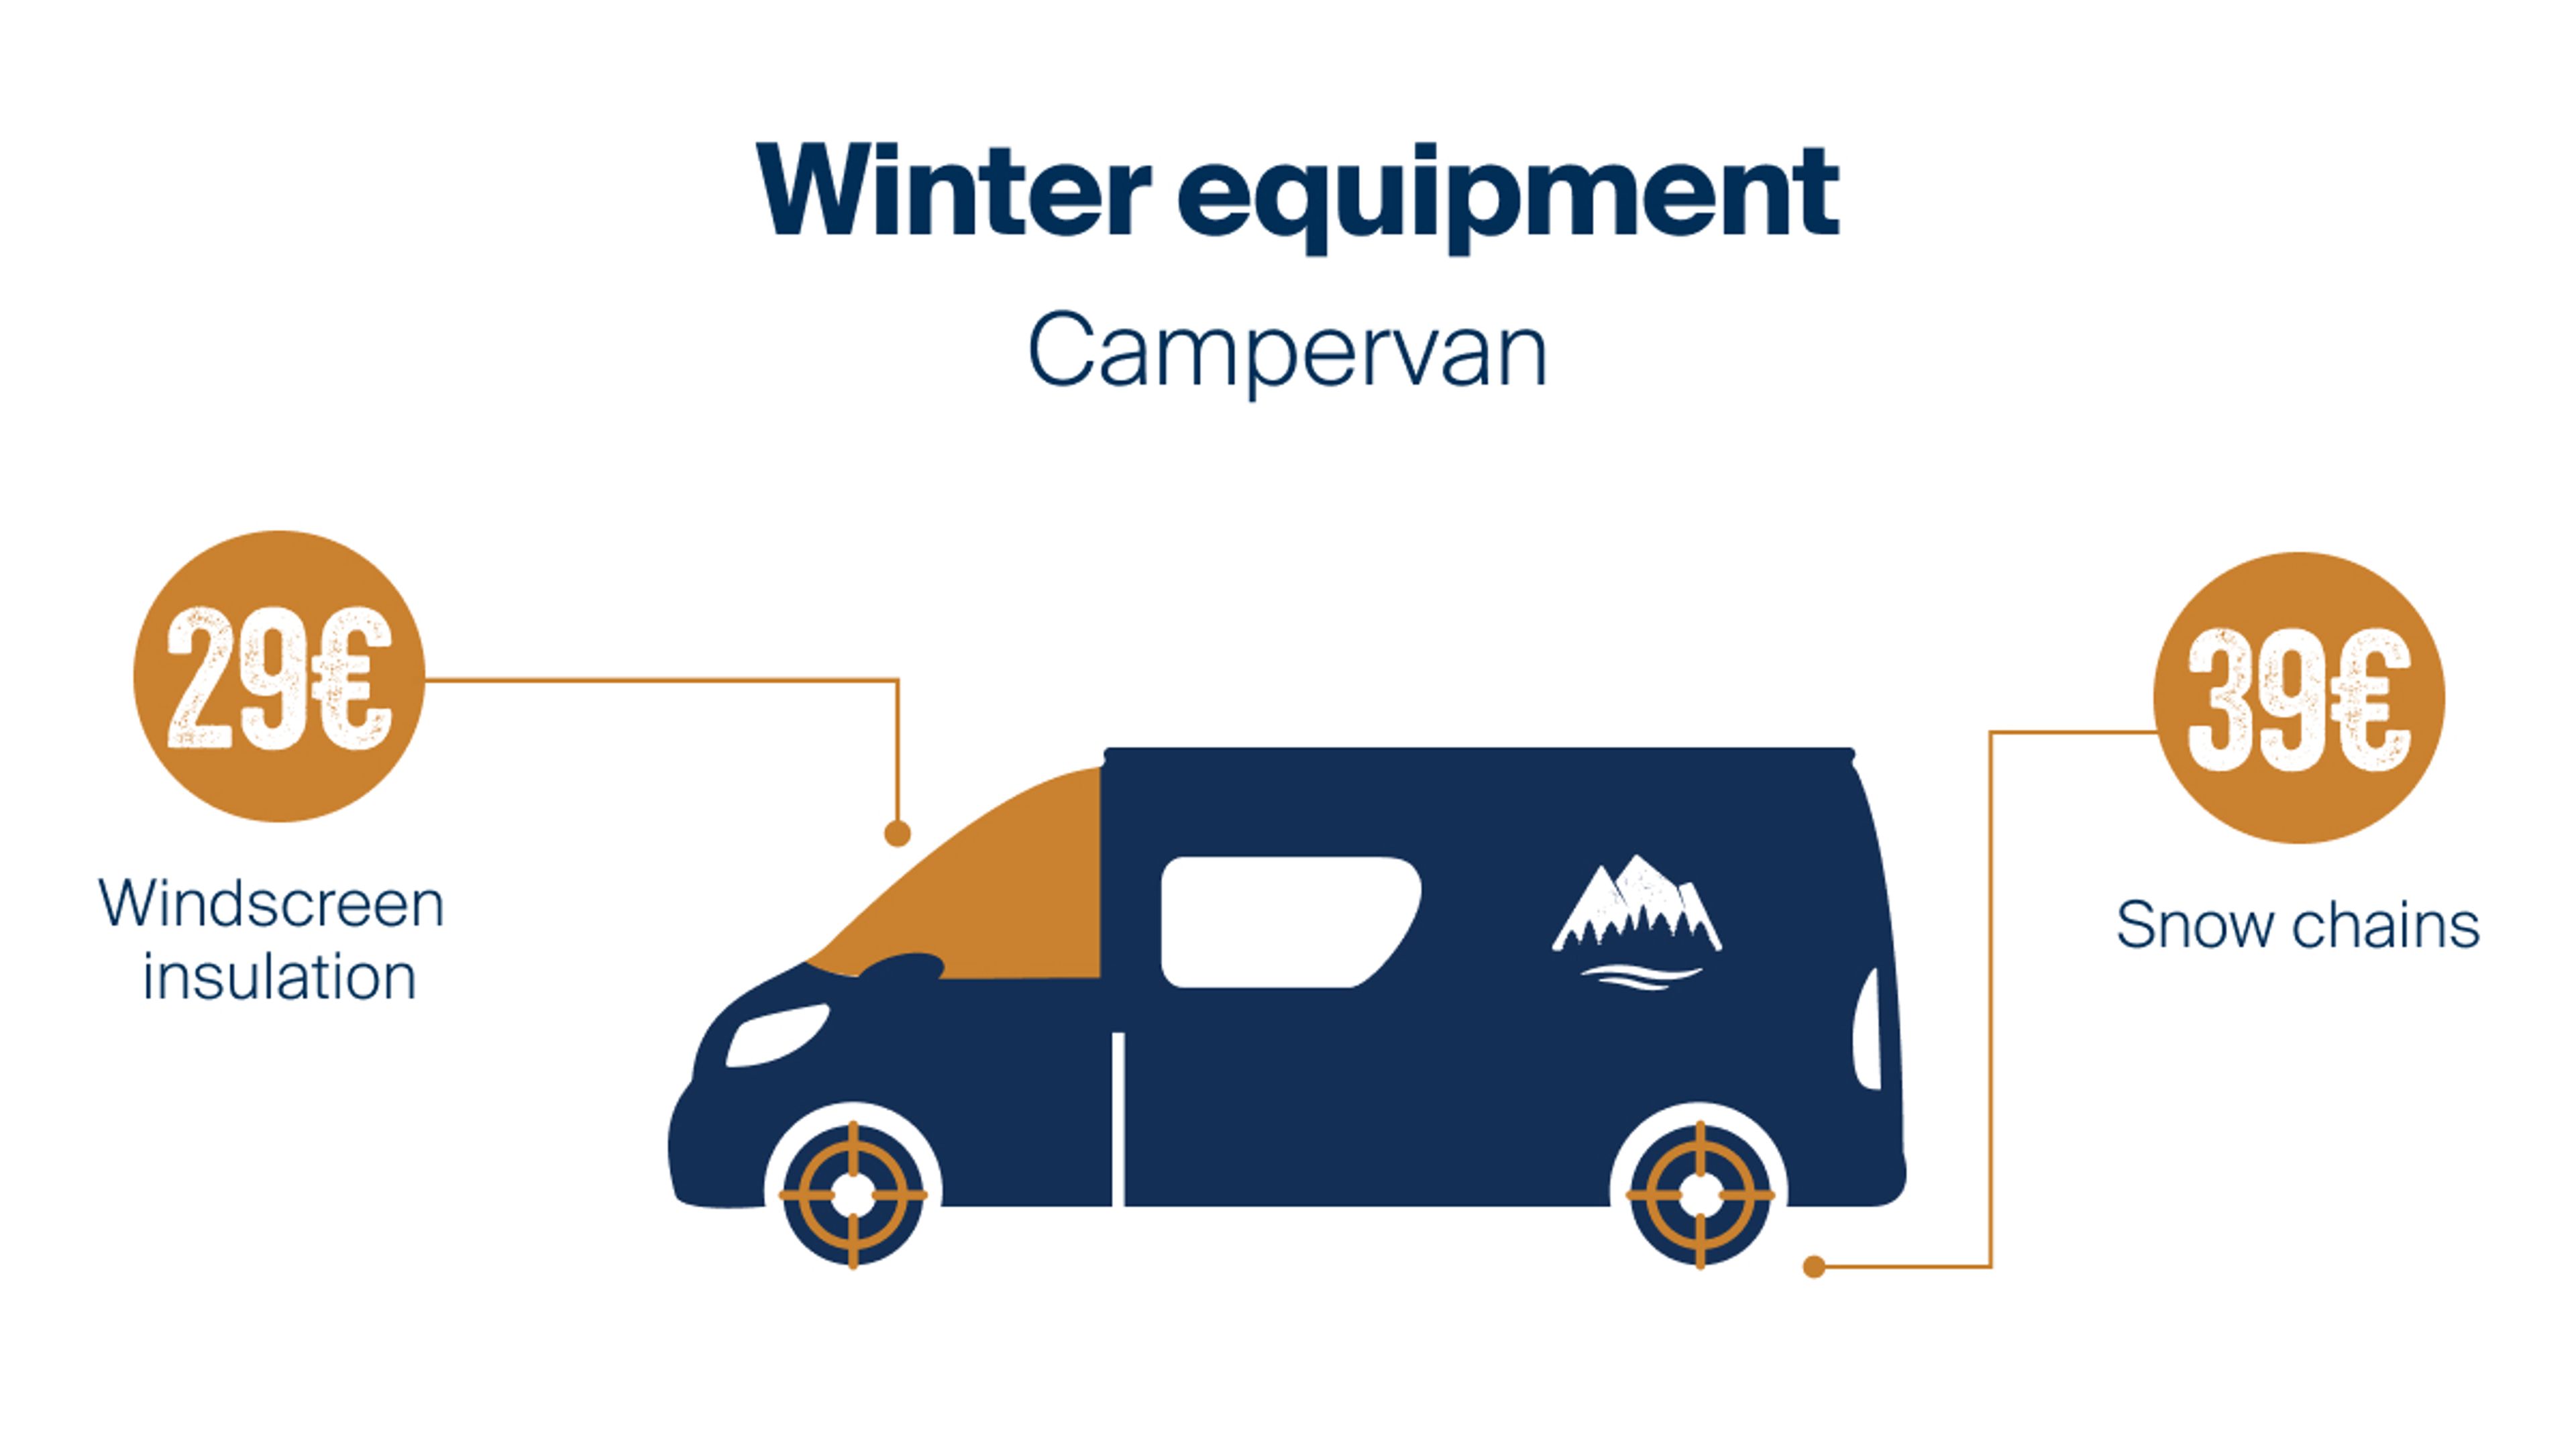 Winter equipment Campervan